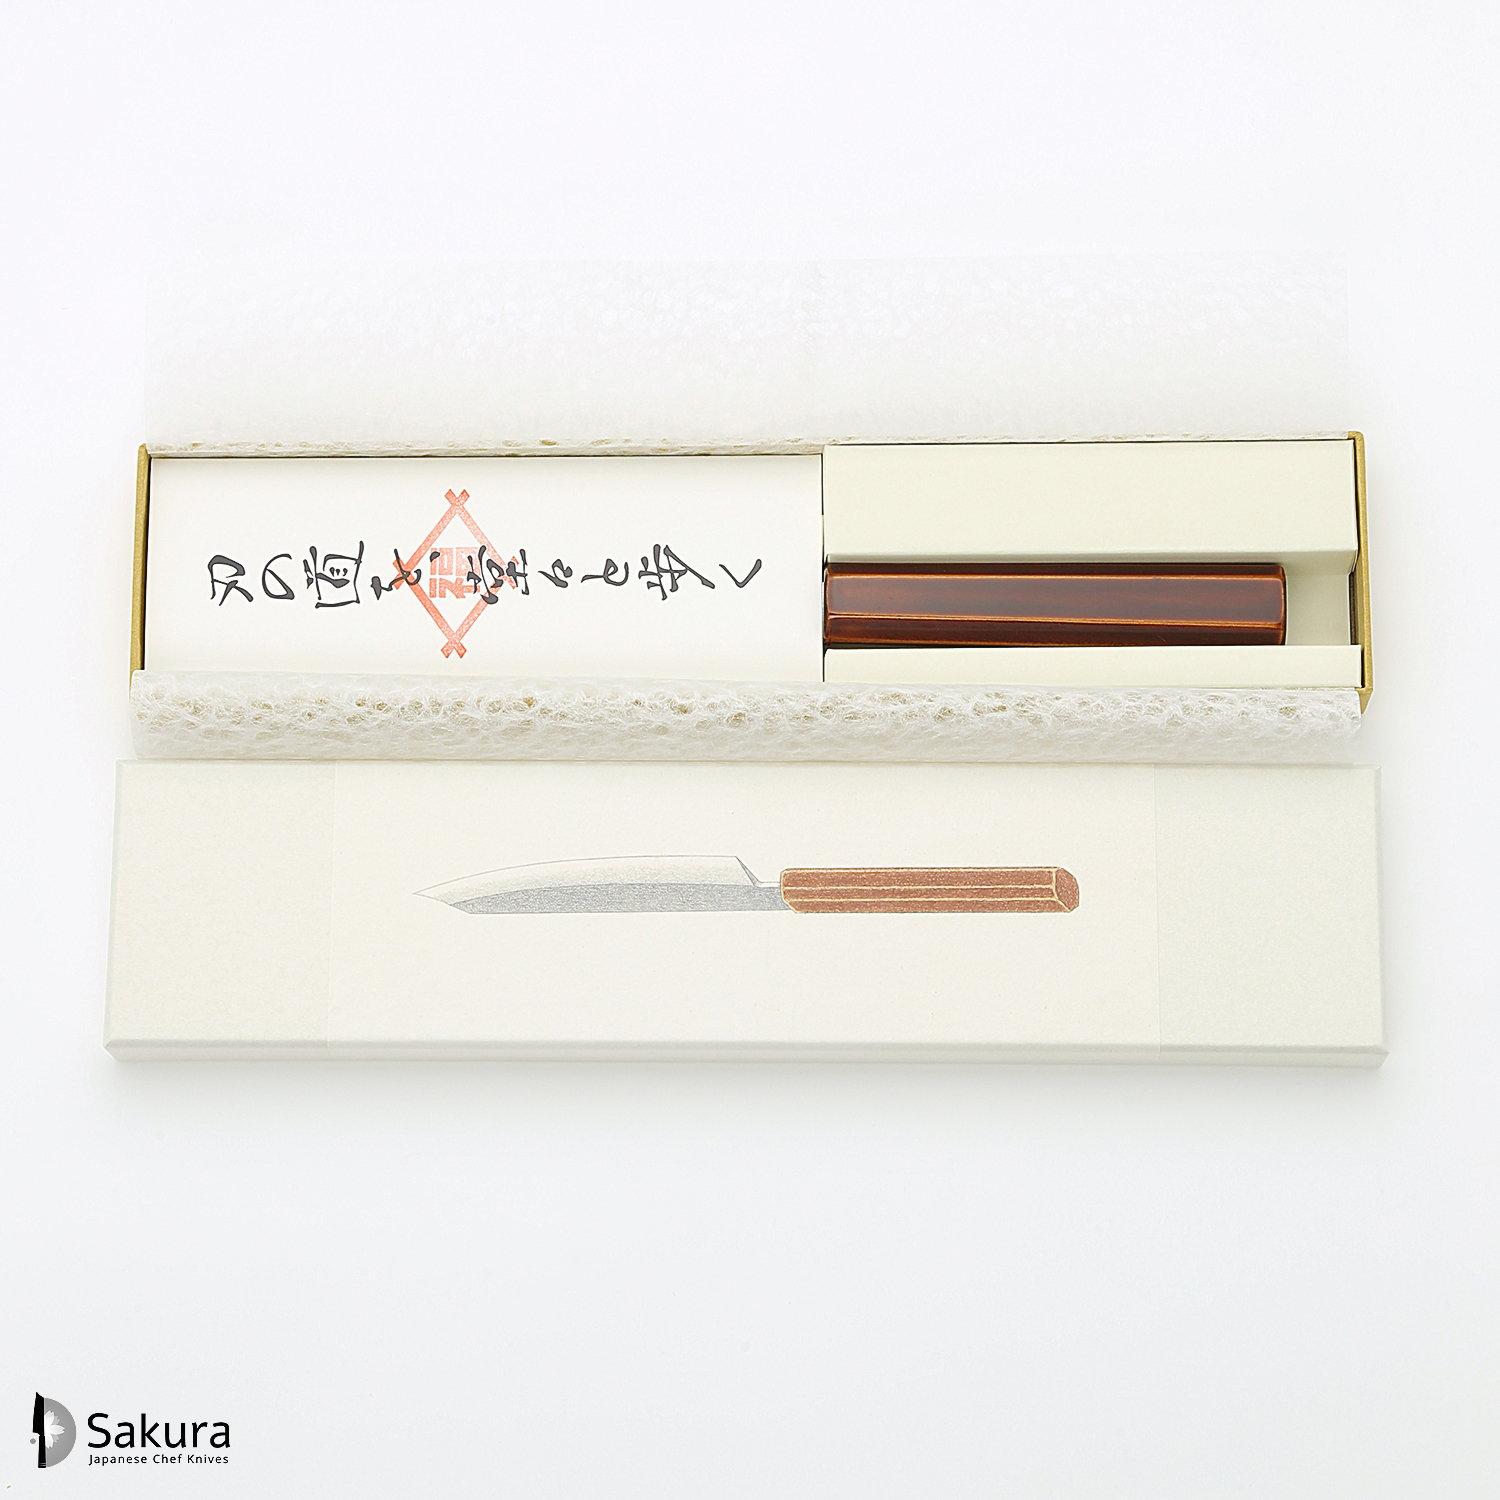 סכין עזר קטנה רב-תכליתית פֶּטִי 150מ״מ מחושלת בעבודת יד 3 שכבות: פלדת פחמן יפנית מתקדמת מסוג Ginsan Silver#3 עטופה פלדת אל-חלד בגימור דמשק גימור דמשק האדו יפן